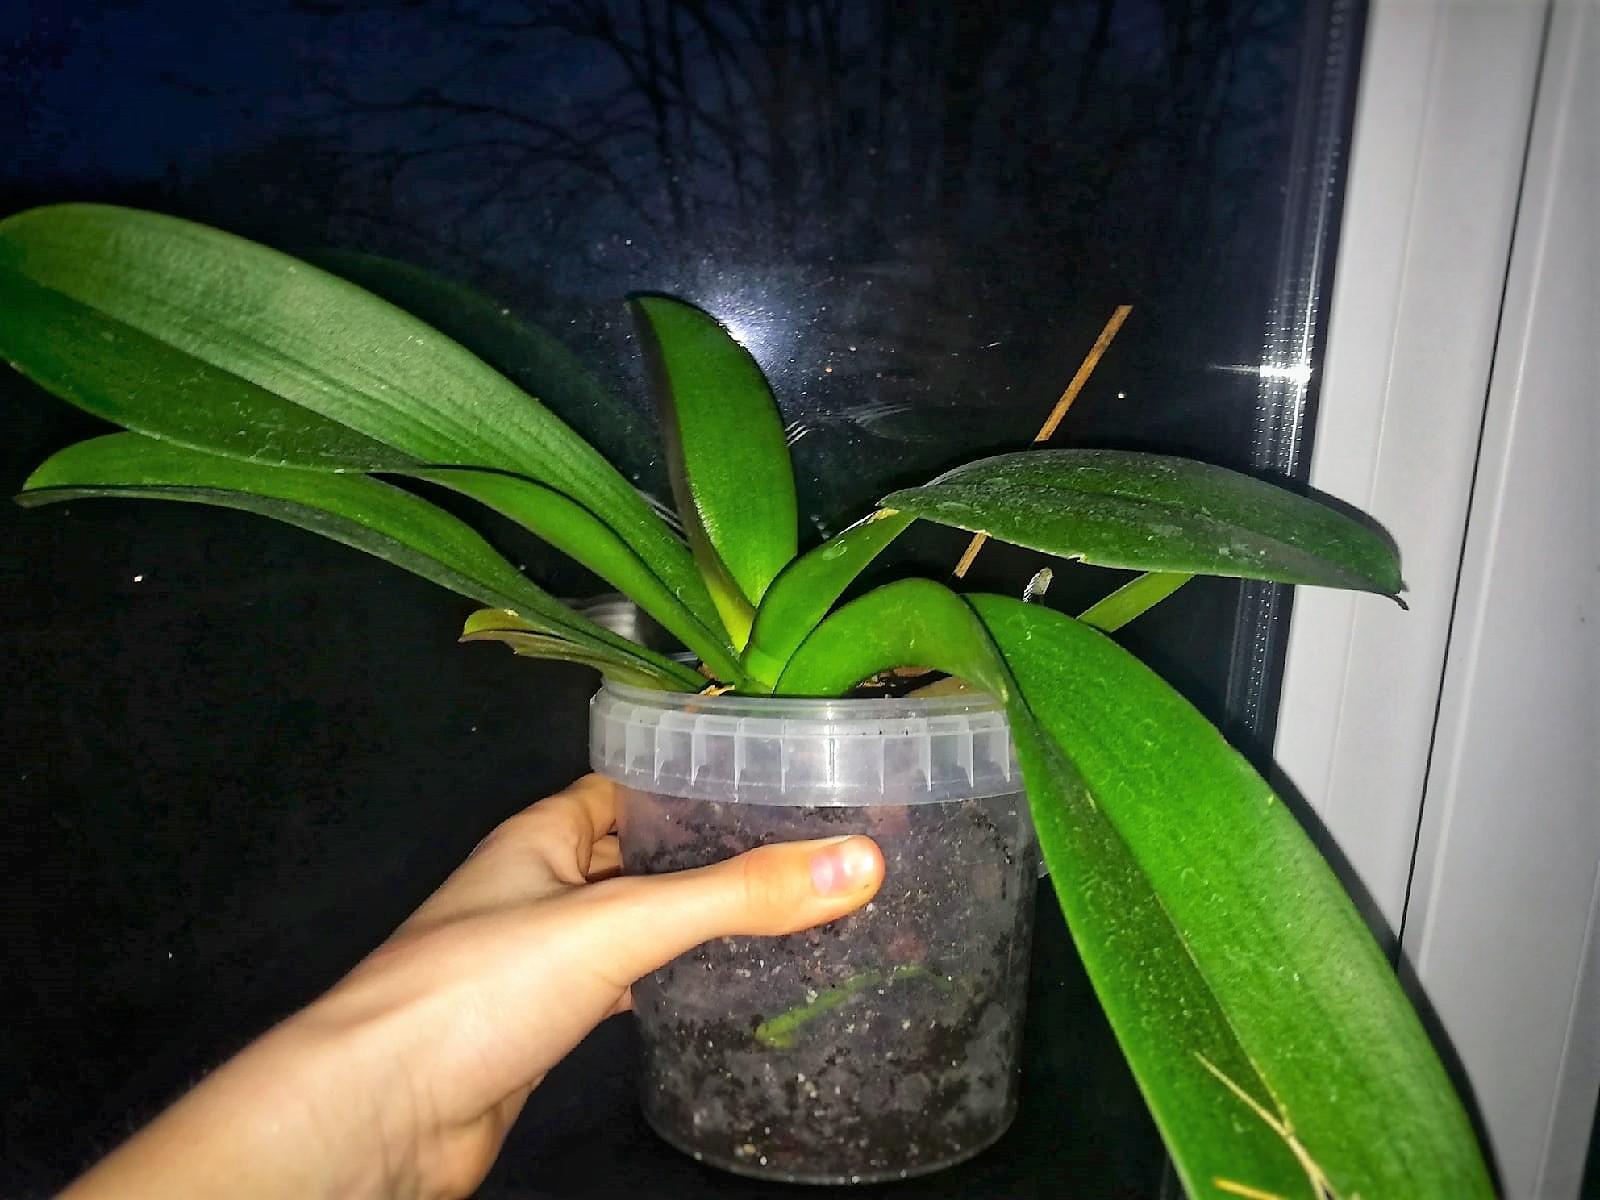 Пересадить орхидею в другой горшок в домашних условиях пошагово с фото